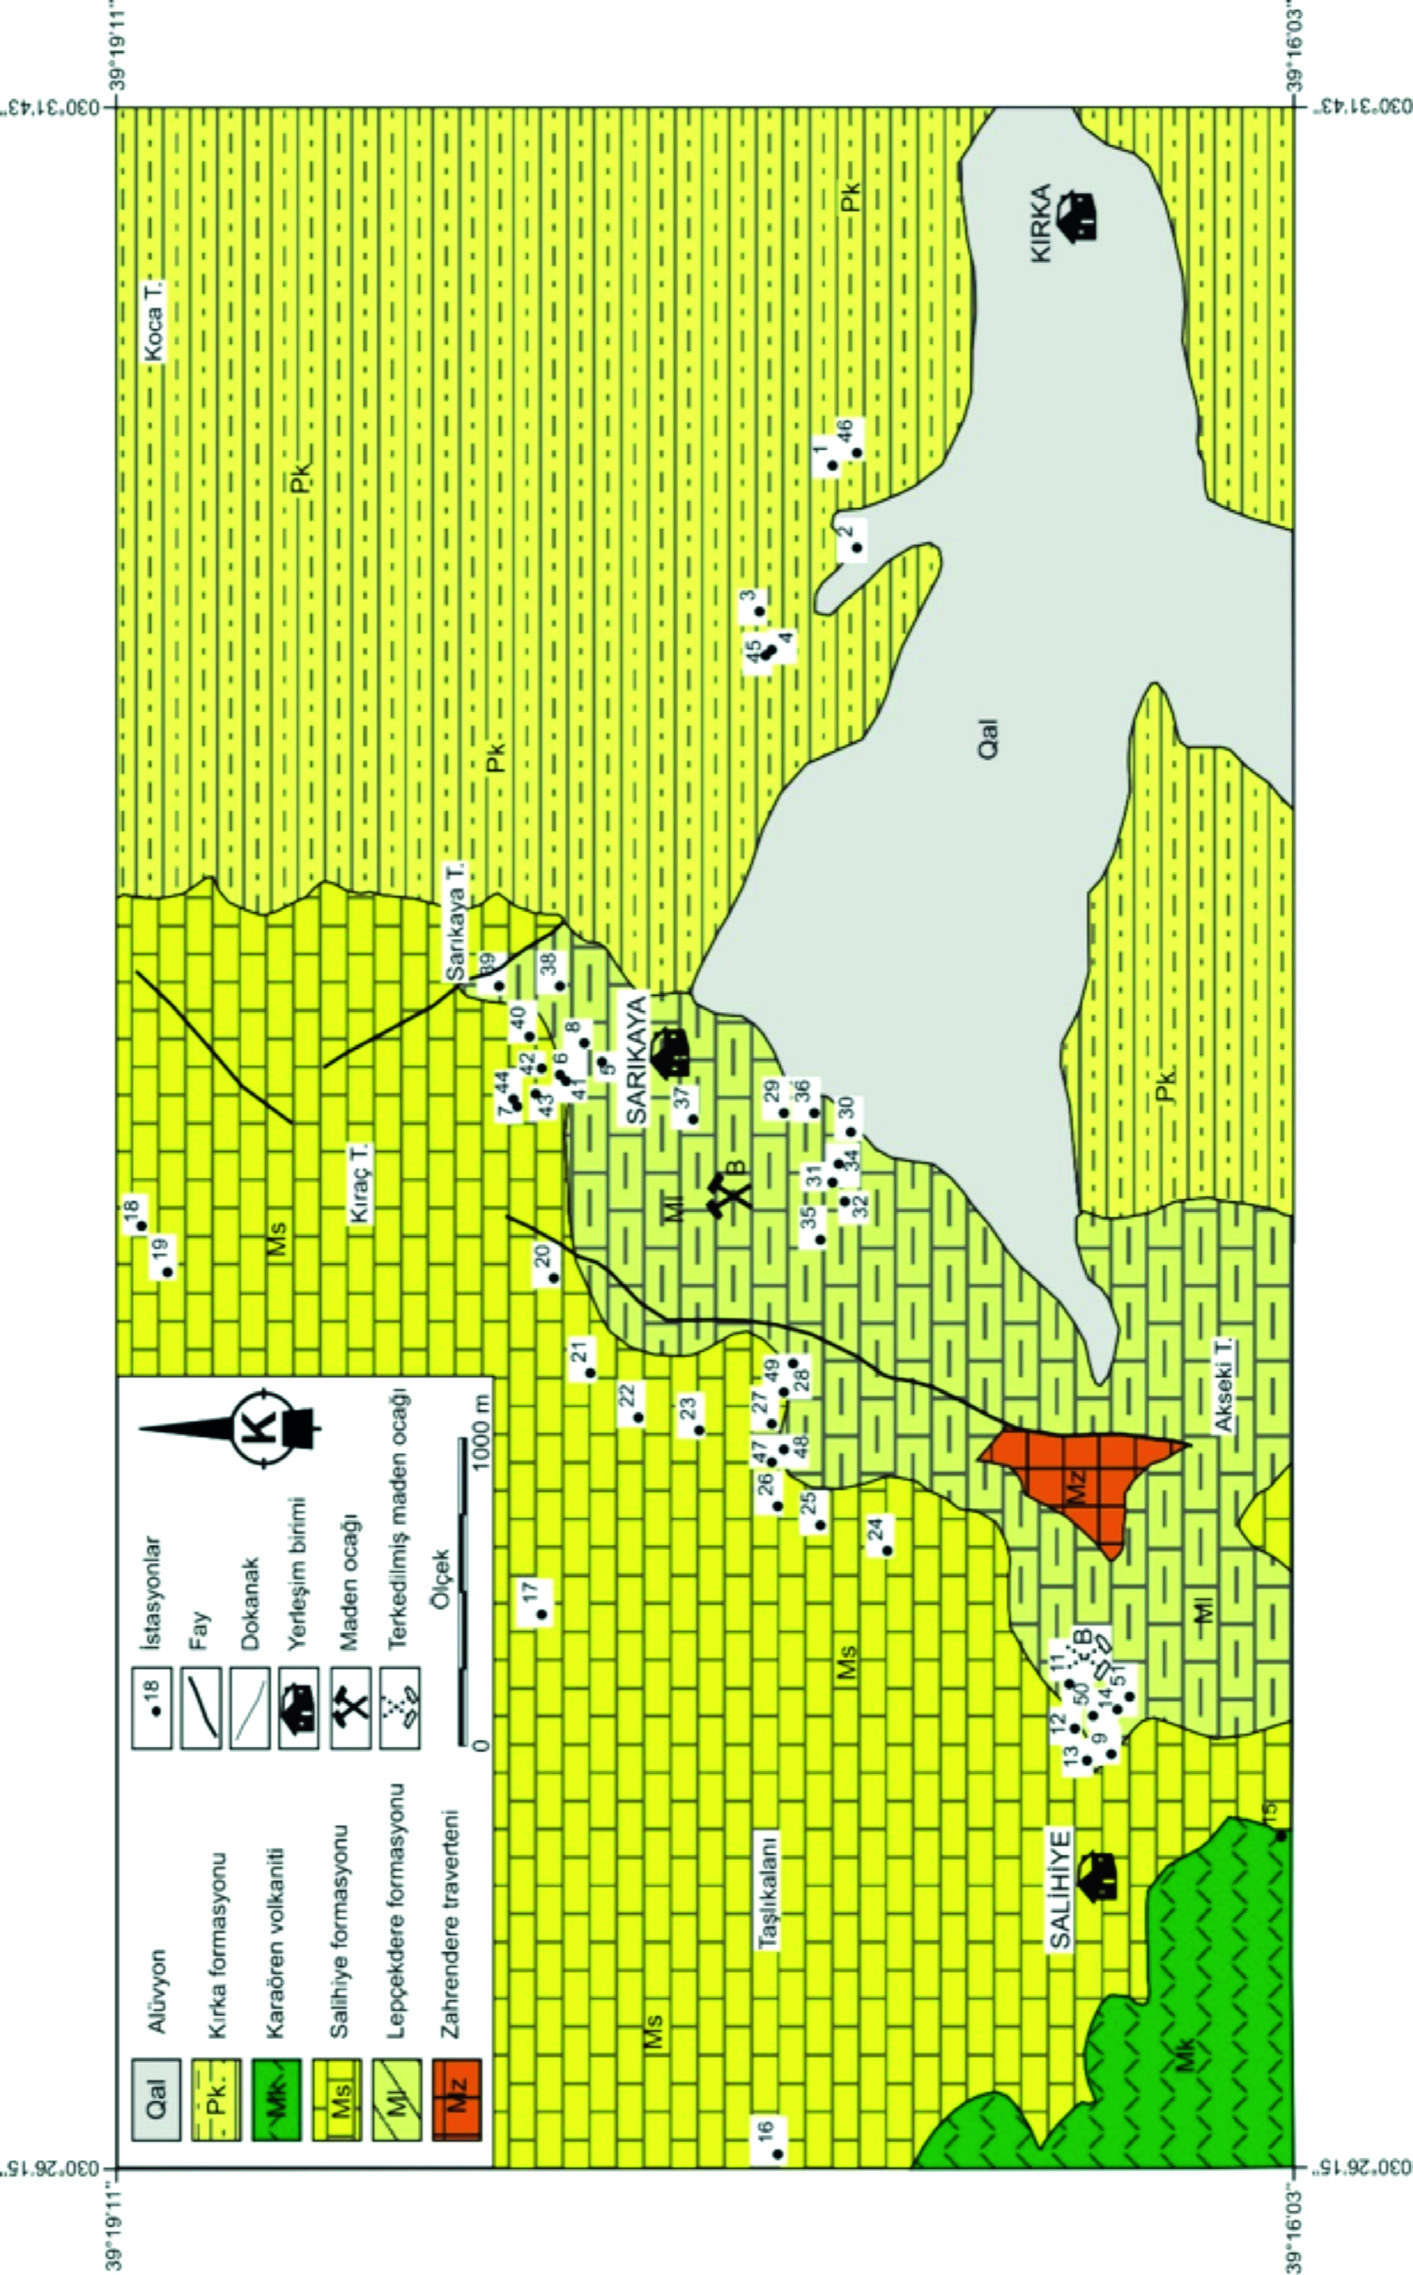 139 Jeoloji Mühendisliği Dergisi 38 (2) 2014 Şekil 2. Kırka (Eskişehir) bölgesinin jeoloji haritası (Gök vd., 1979 dan değiştirilerek).